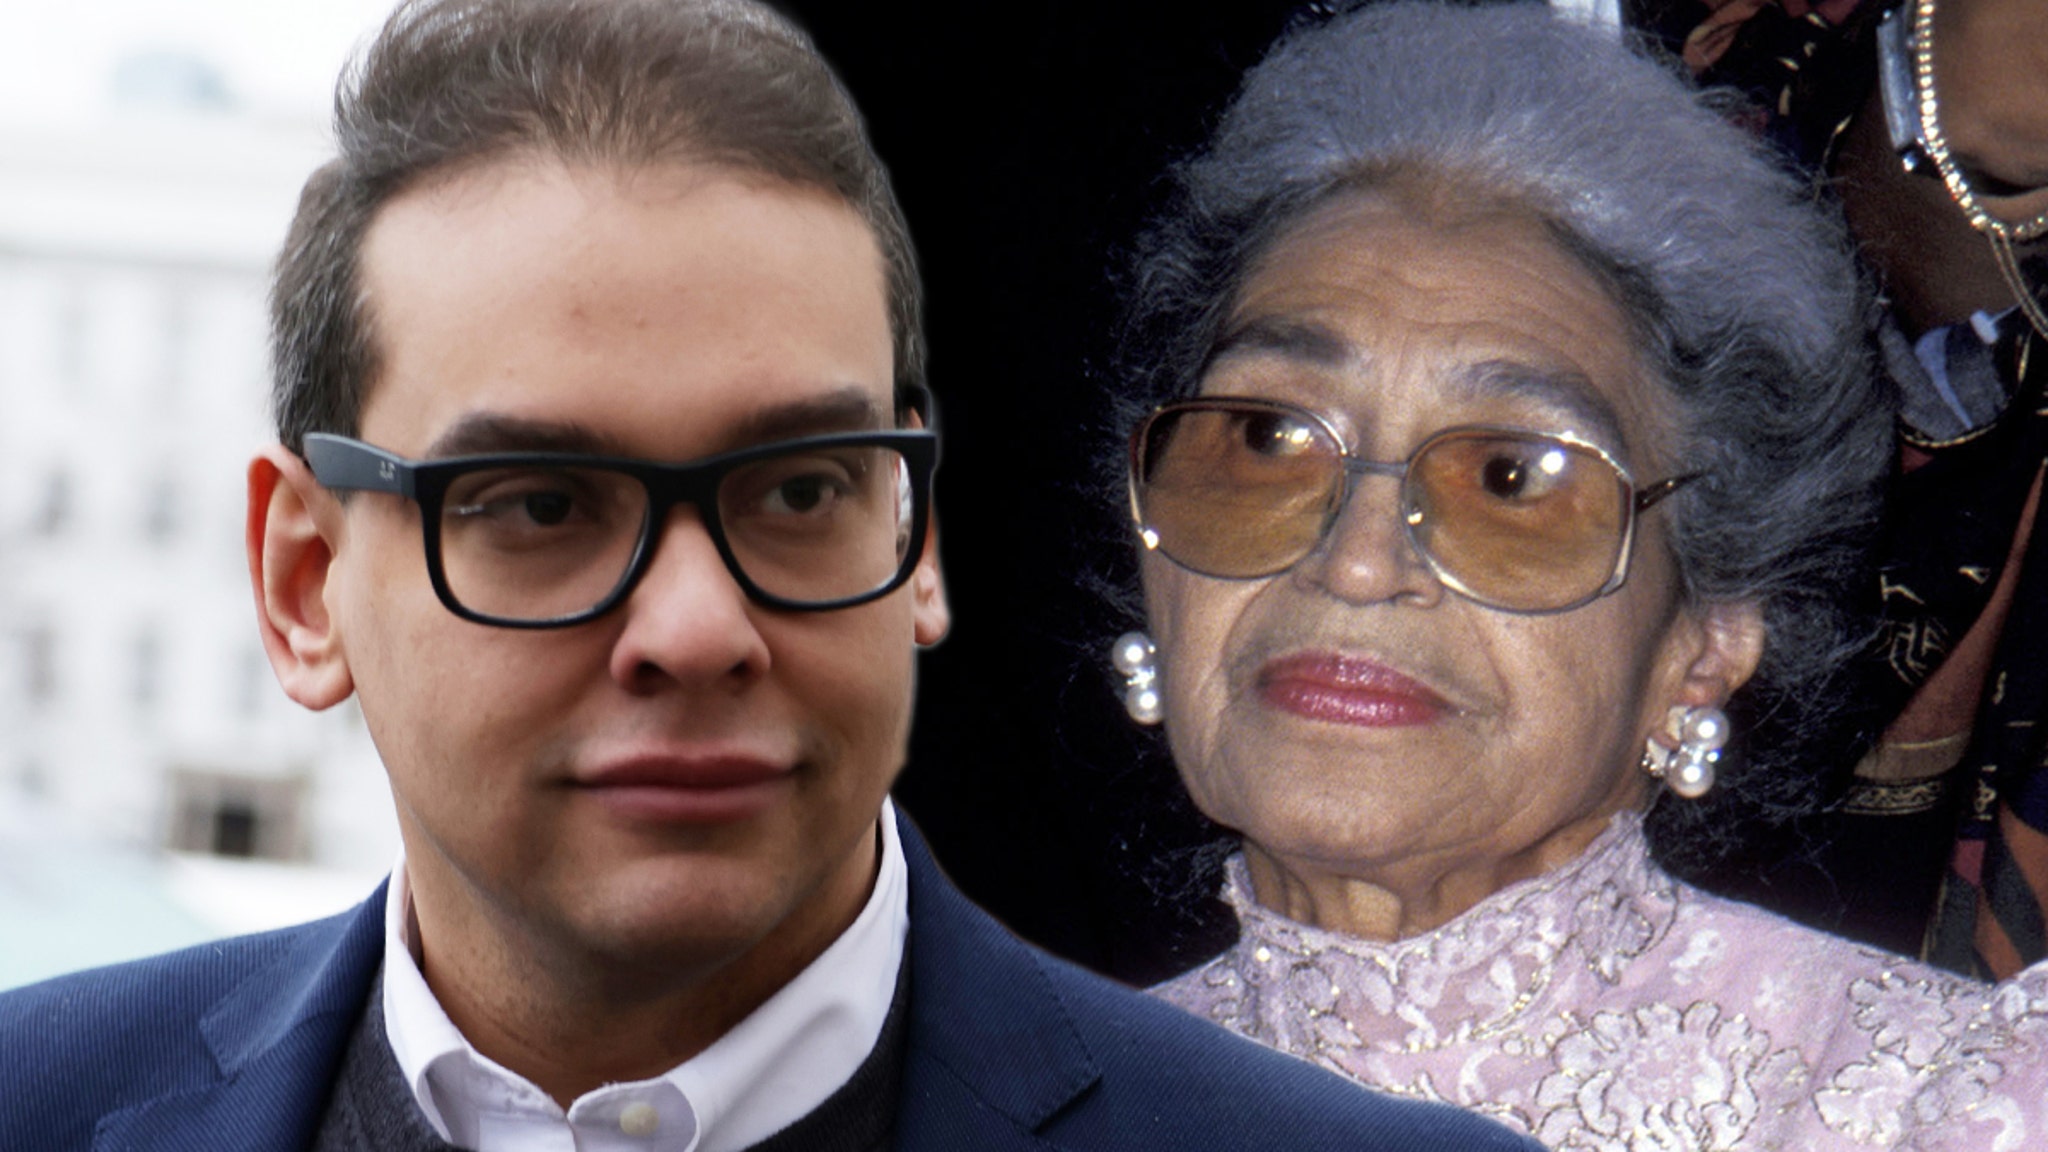 El representante George Santos criticó a su sobrina Rosa Parks después de hacer una comparación